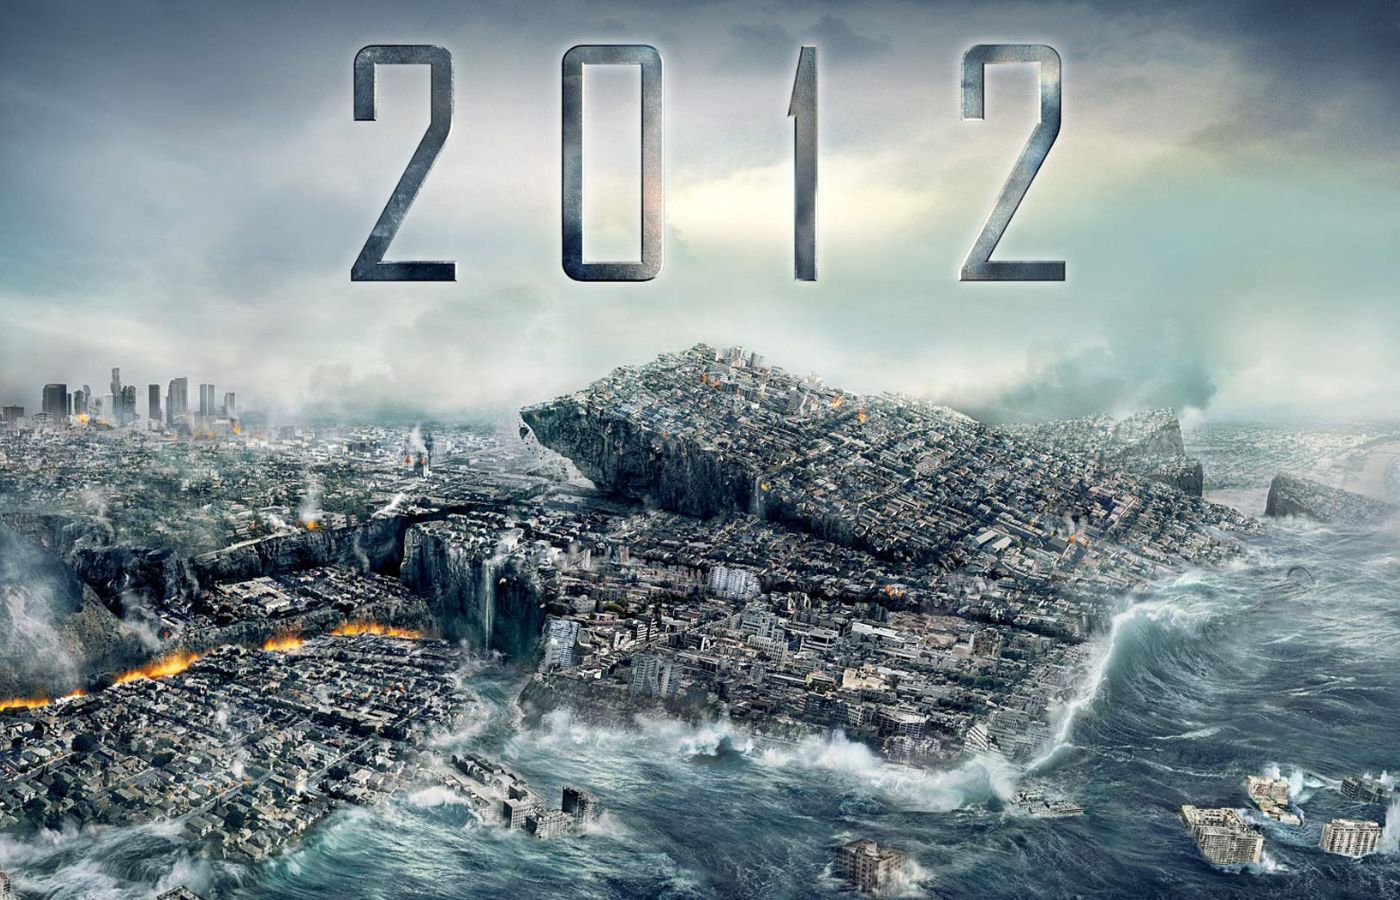 2012 é um dos filmes de ficção científica que errou ao prever o futuro. Foto: Reprodução/Internet.